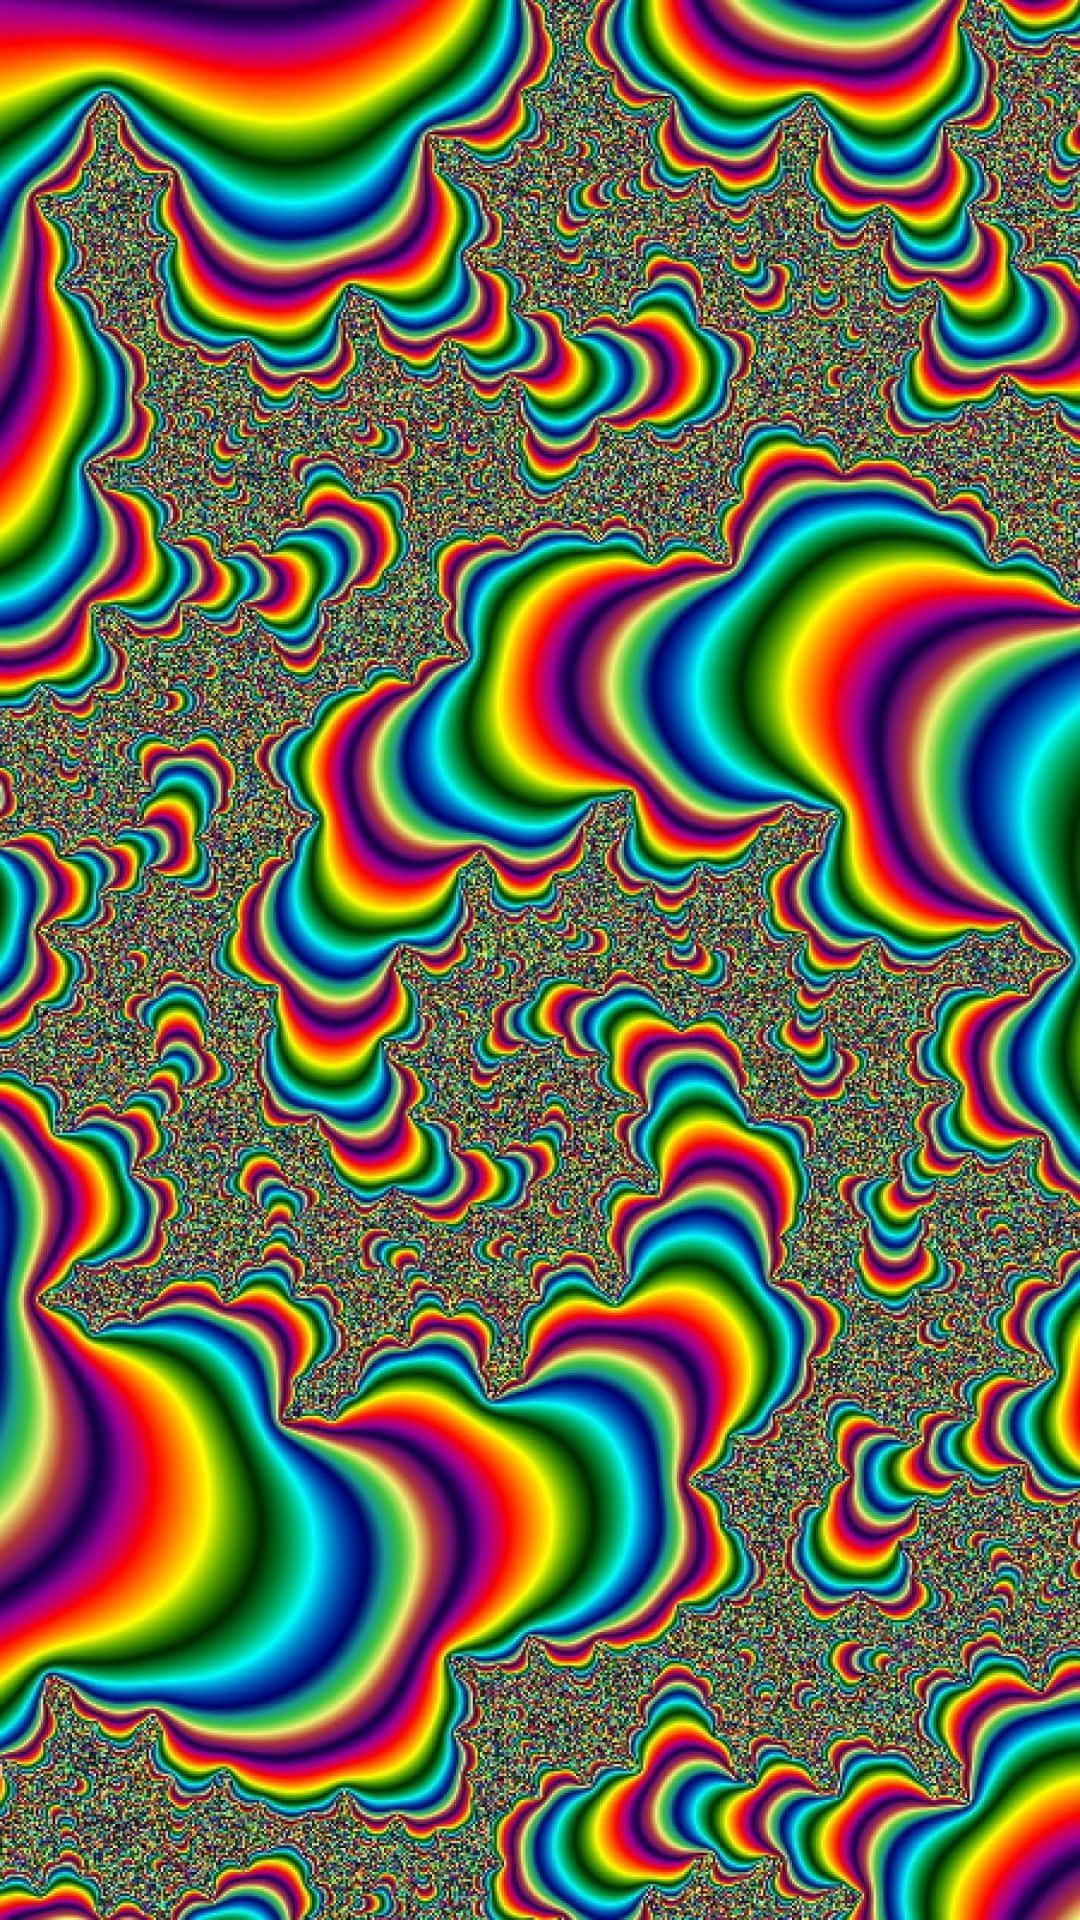 Einbuntes Psychedelisches Bild Mit Regenbogenwellen. Wallpaper